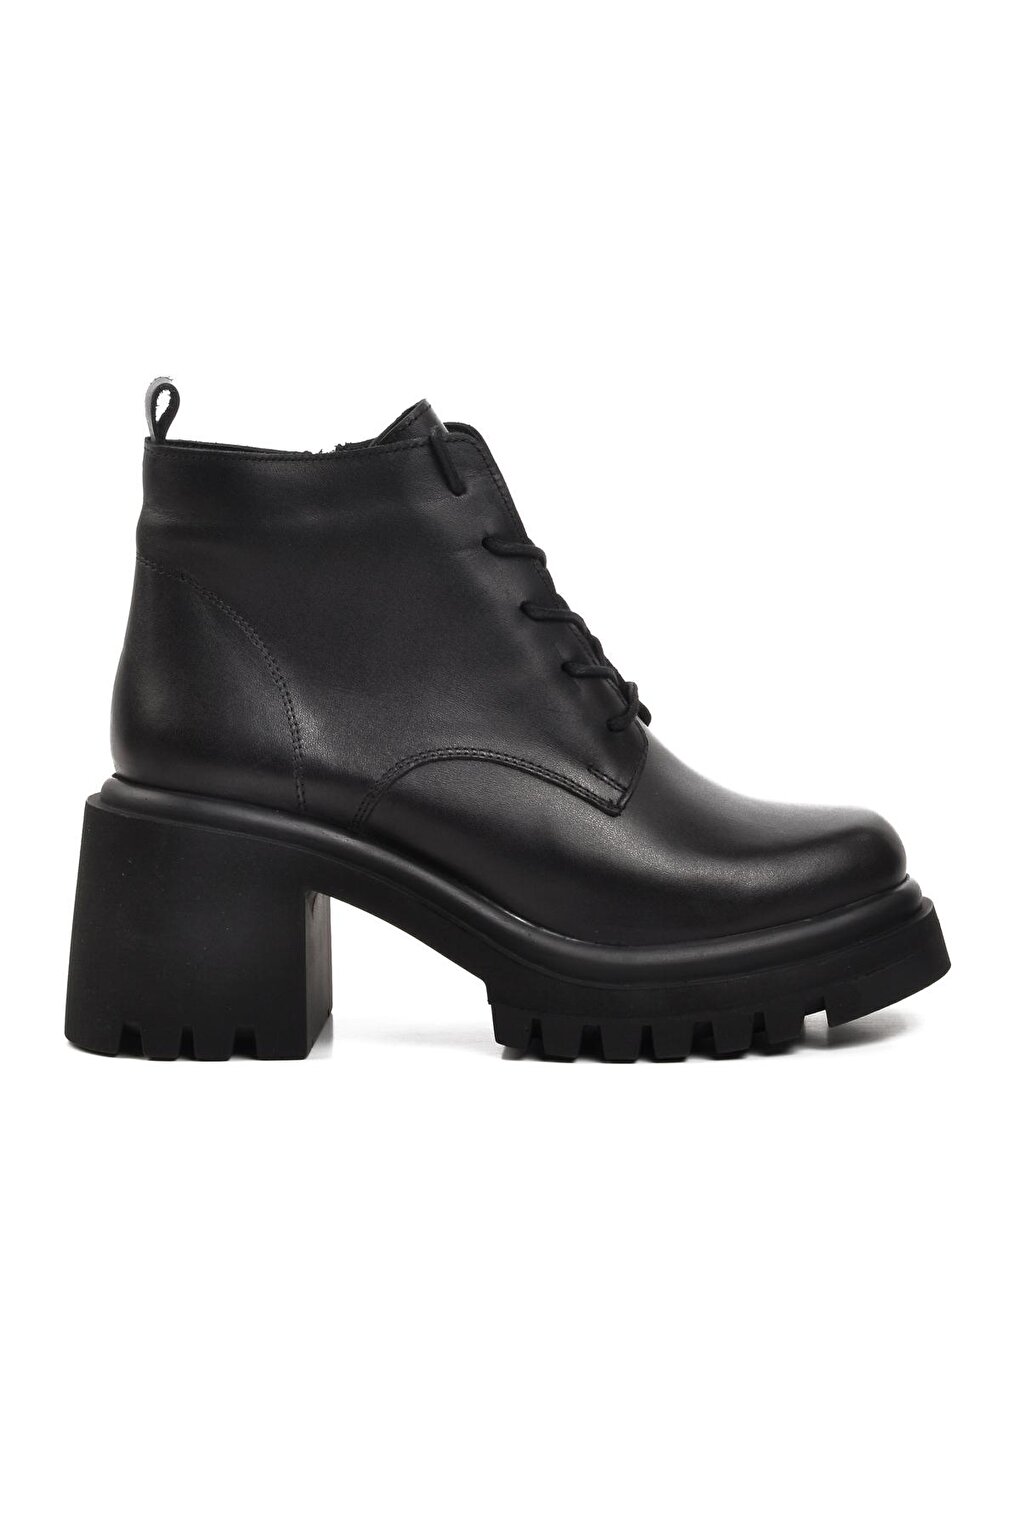 27723 Черные женские ботинки на каблуке из натуральной кожи Walkway лоферы женские из натуральной масляной кожи на невысоком квадратном каблуке 4758 цвет черный размер 35